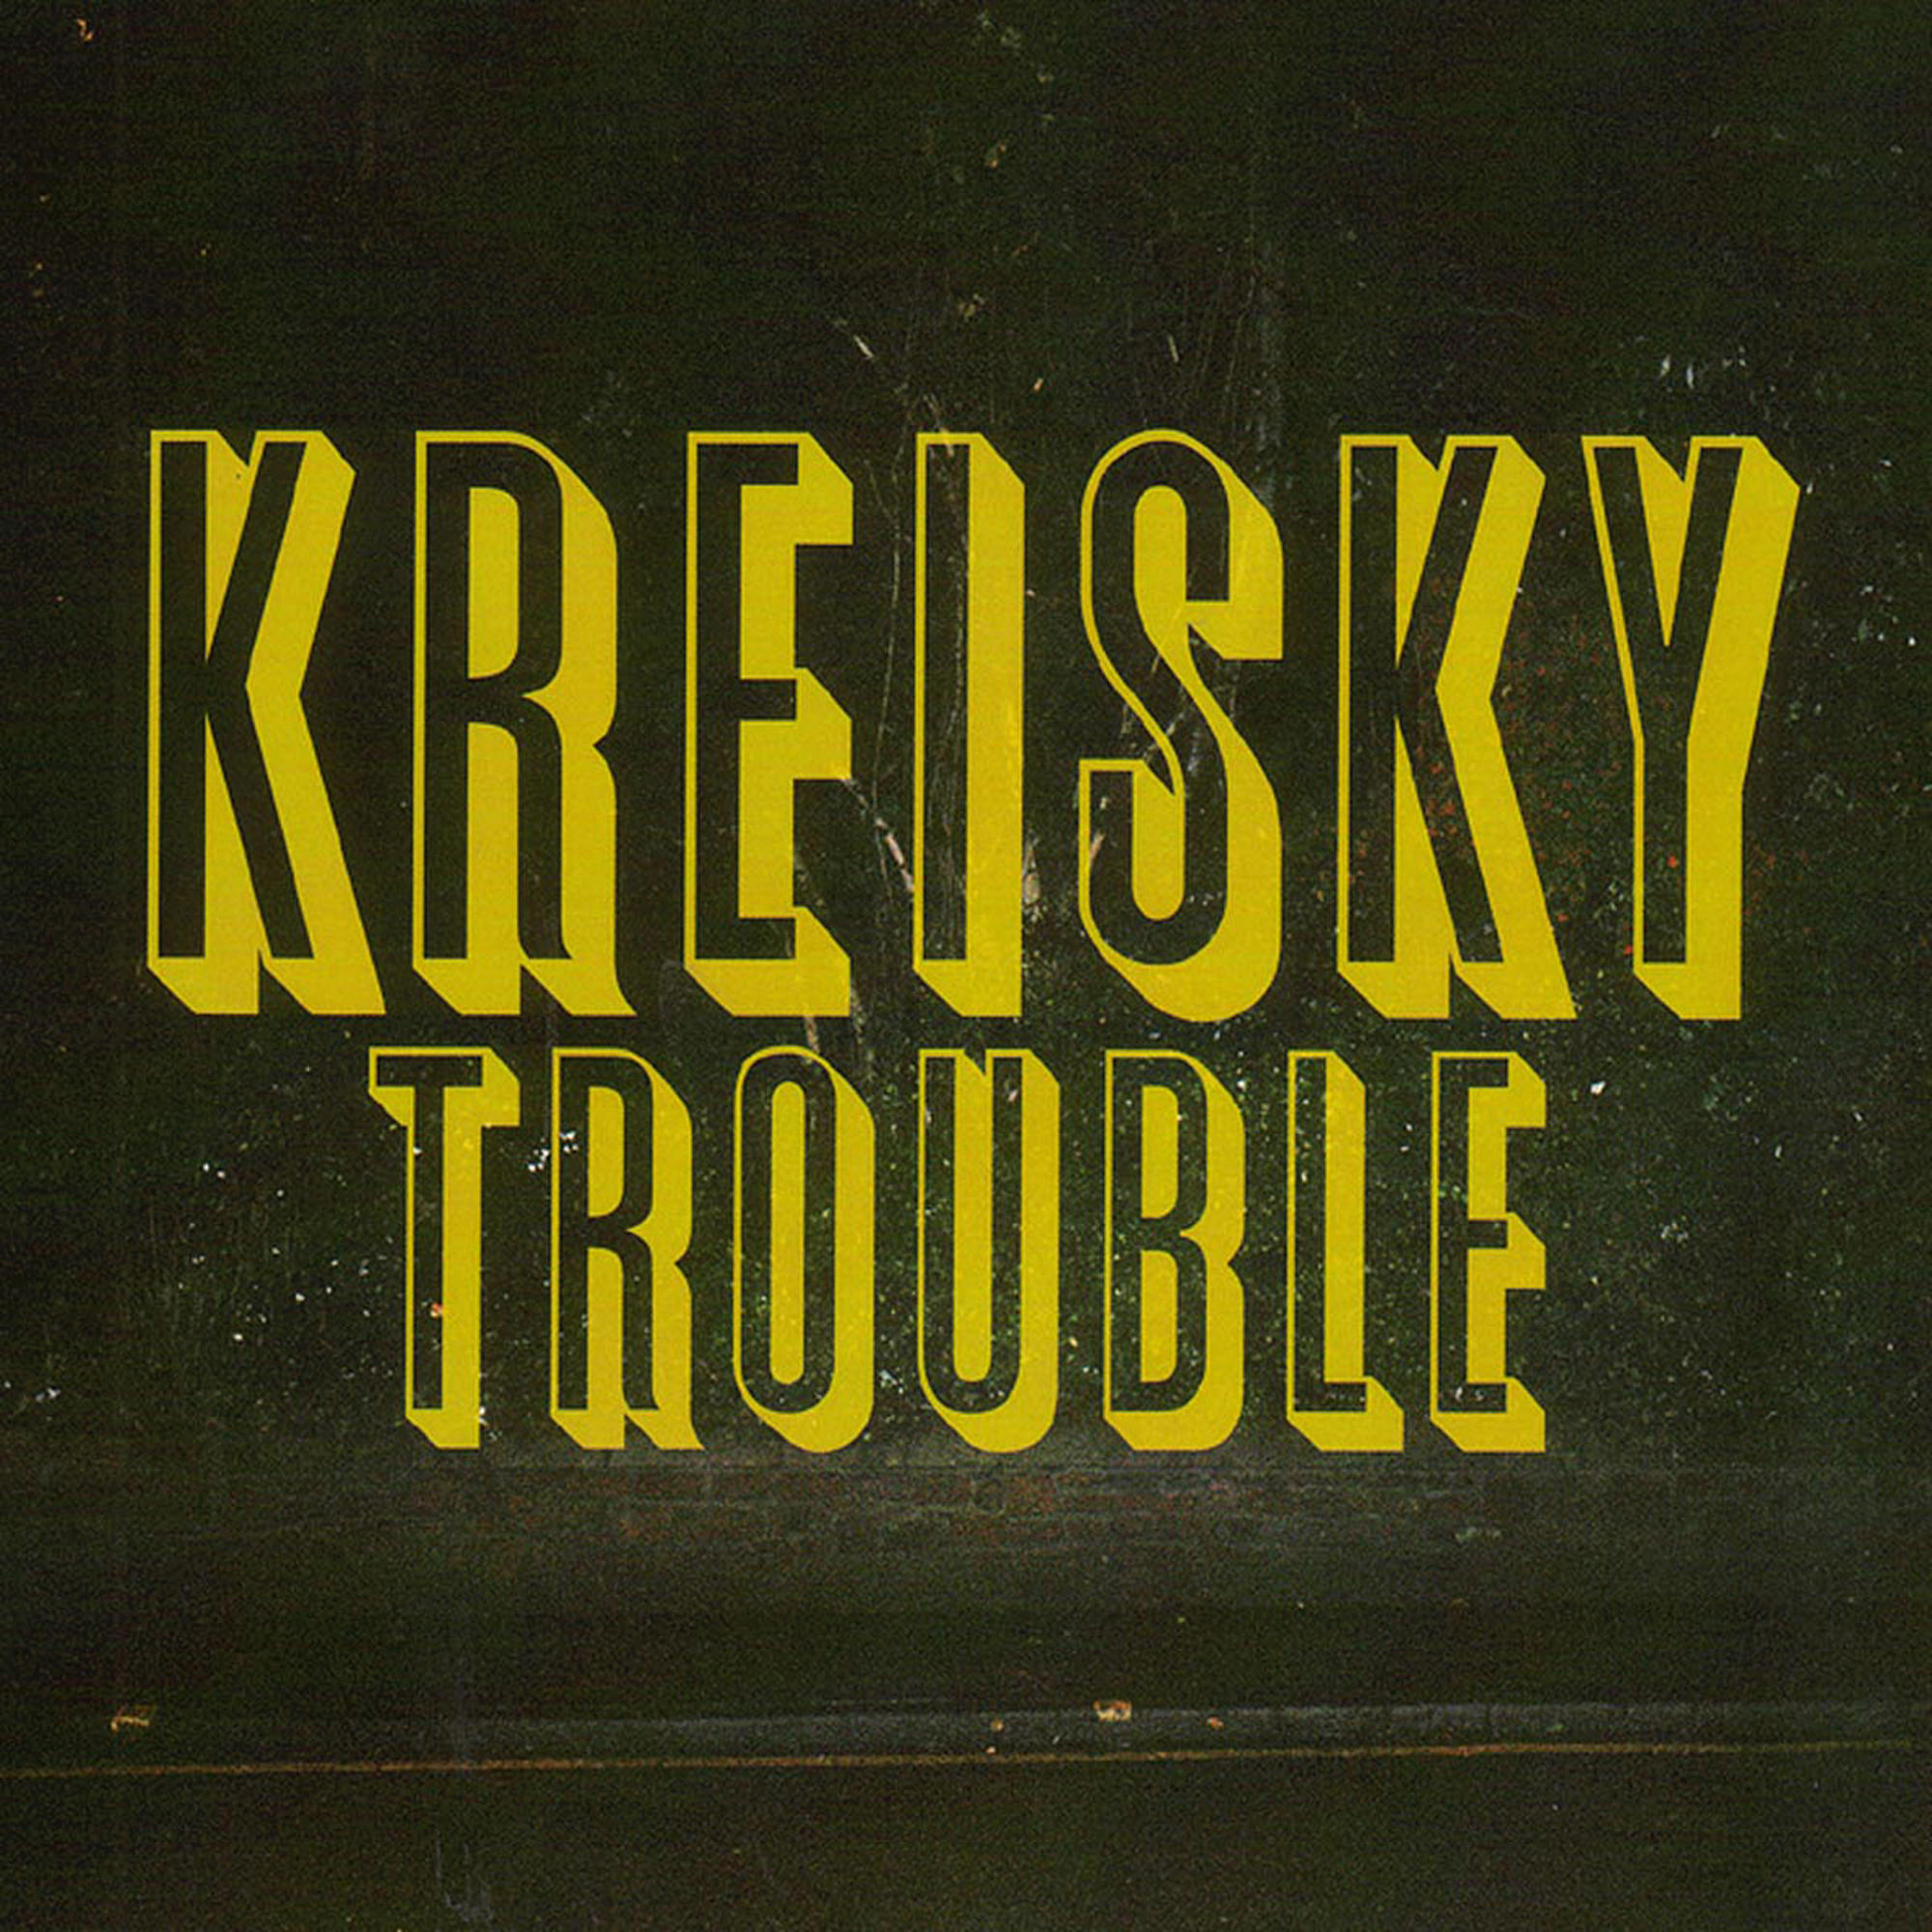 Kreisky - (Vinyl) - Trouble